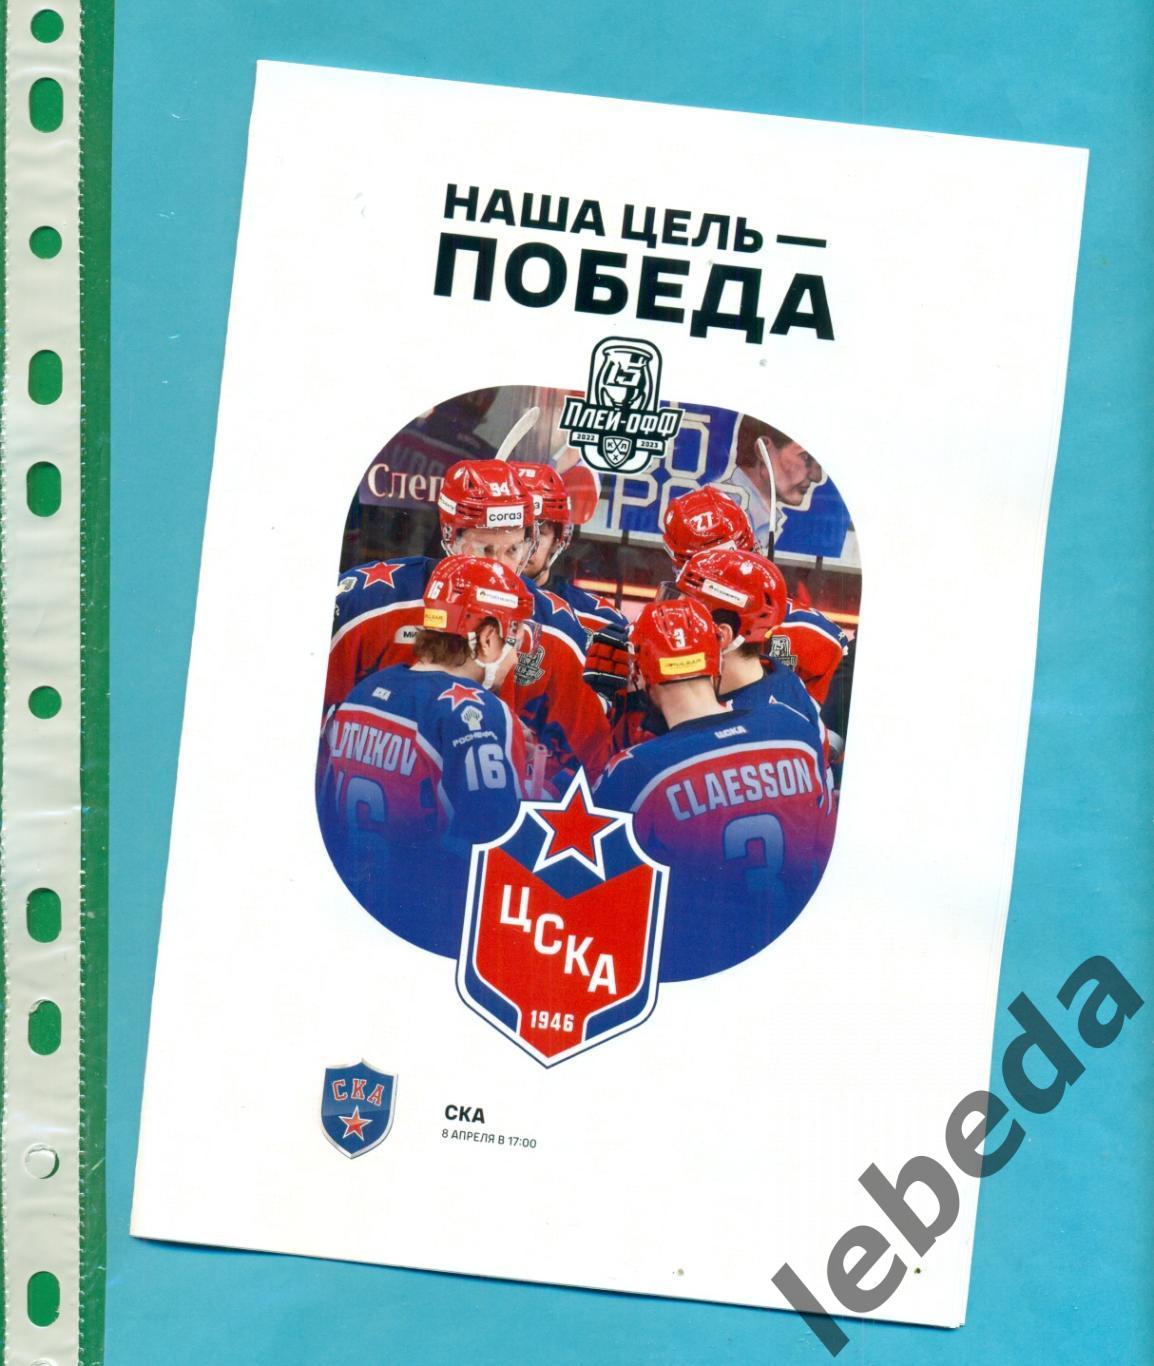 ЦСКА - СКА Санкт-Петербург - 2022 / 2023 год. (08.04.23.) финал конференции